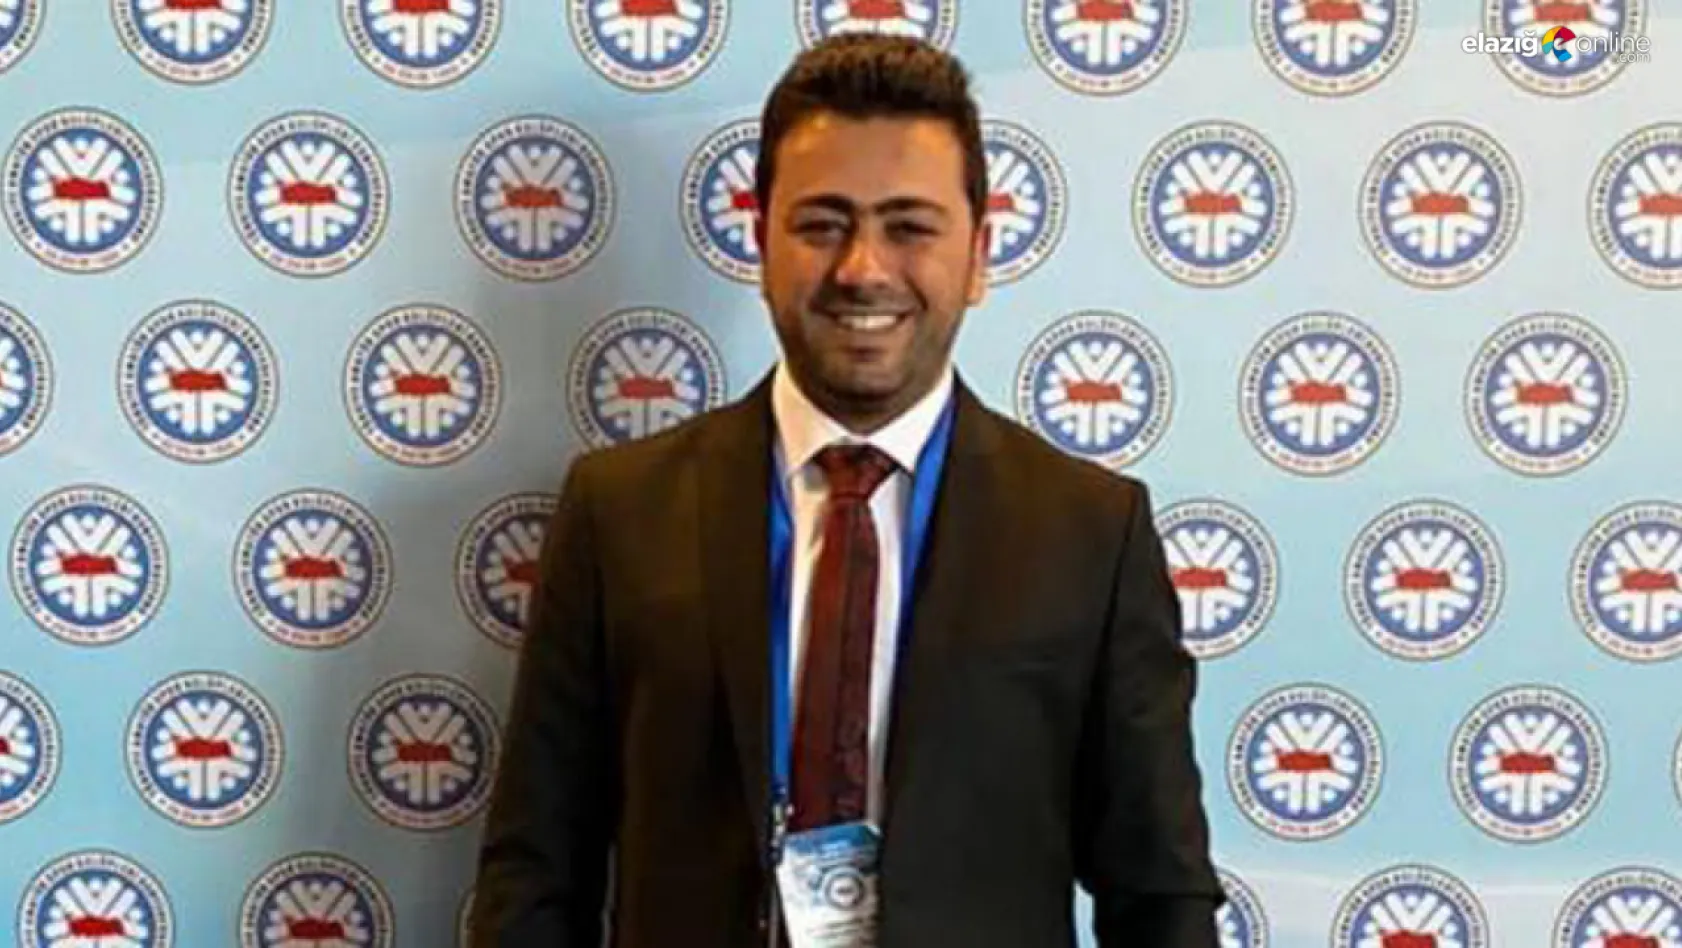 Elazığ TFF Futbol İl Temsilcisi Kılınç, istifa etti